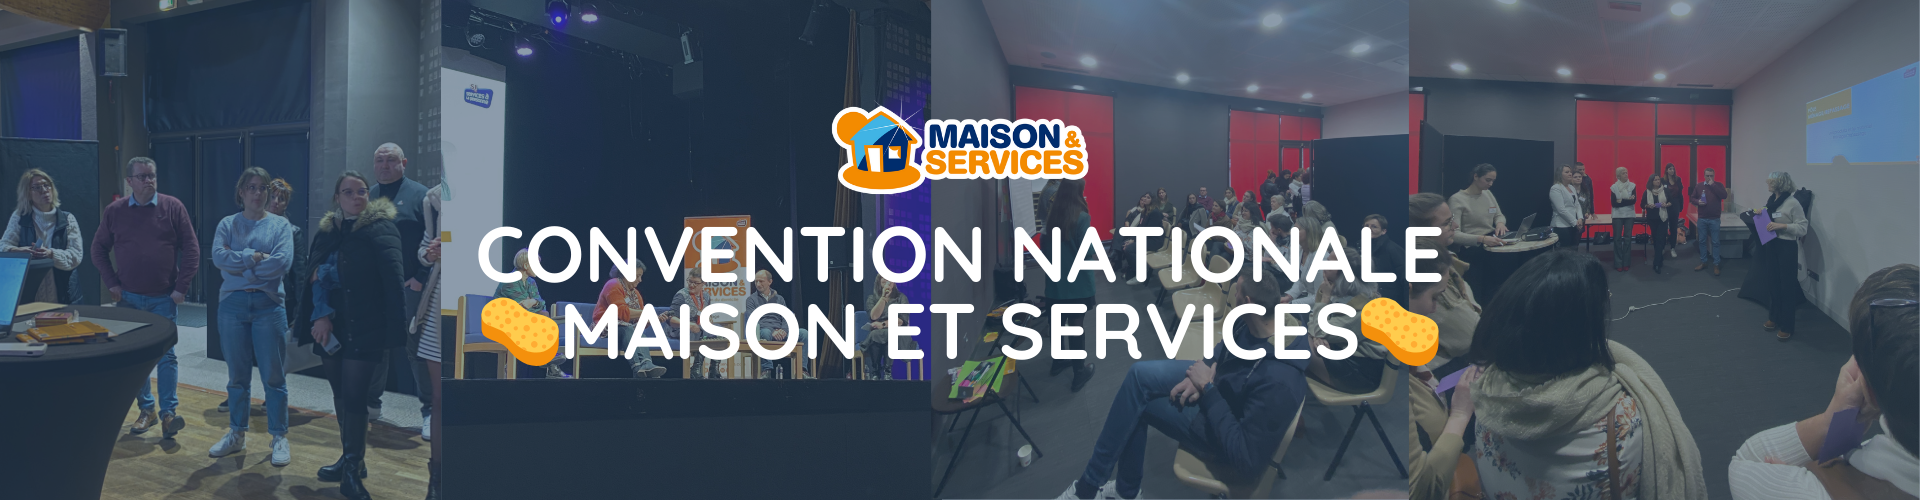 Convention Nationale Maison et Services ménage